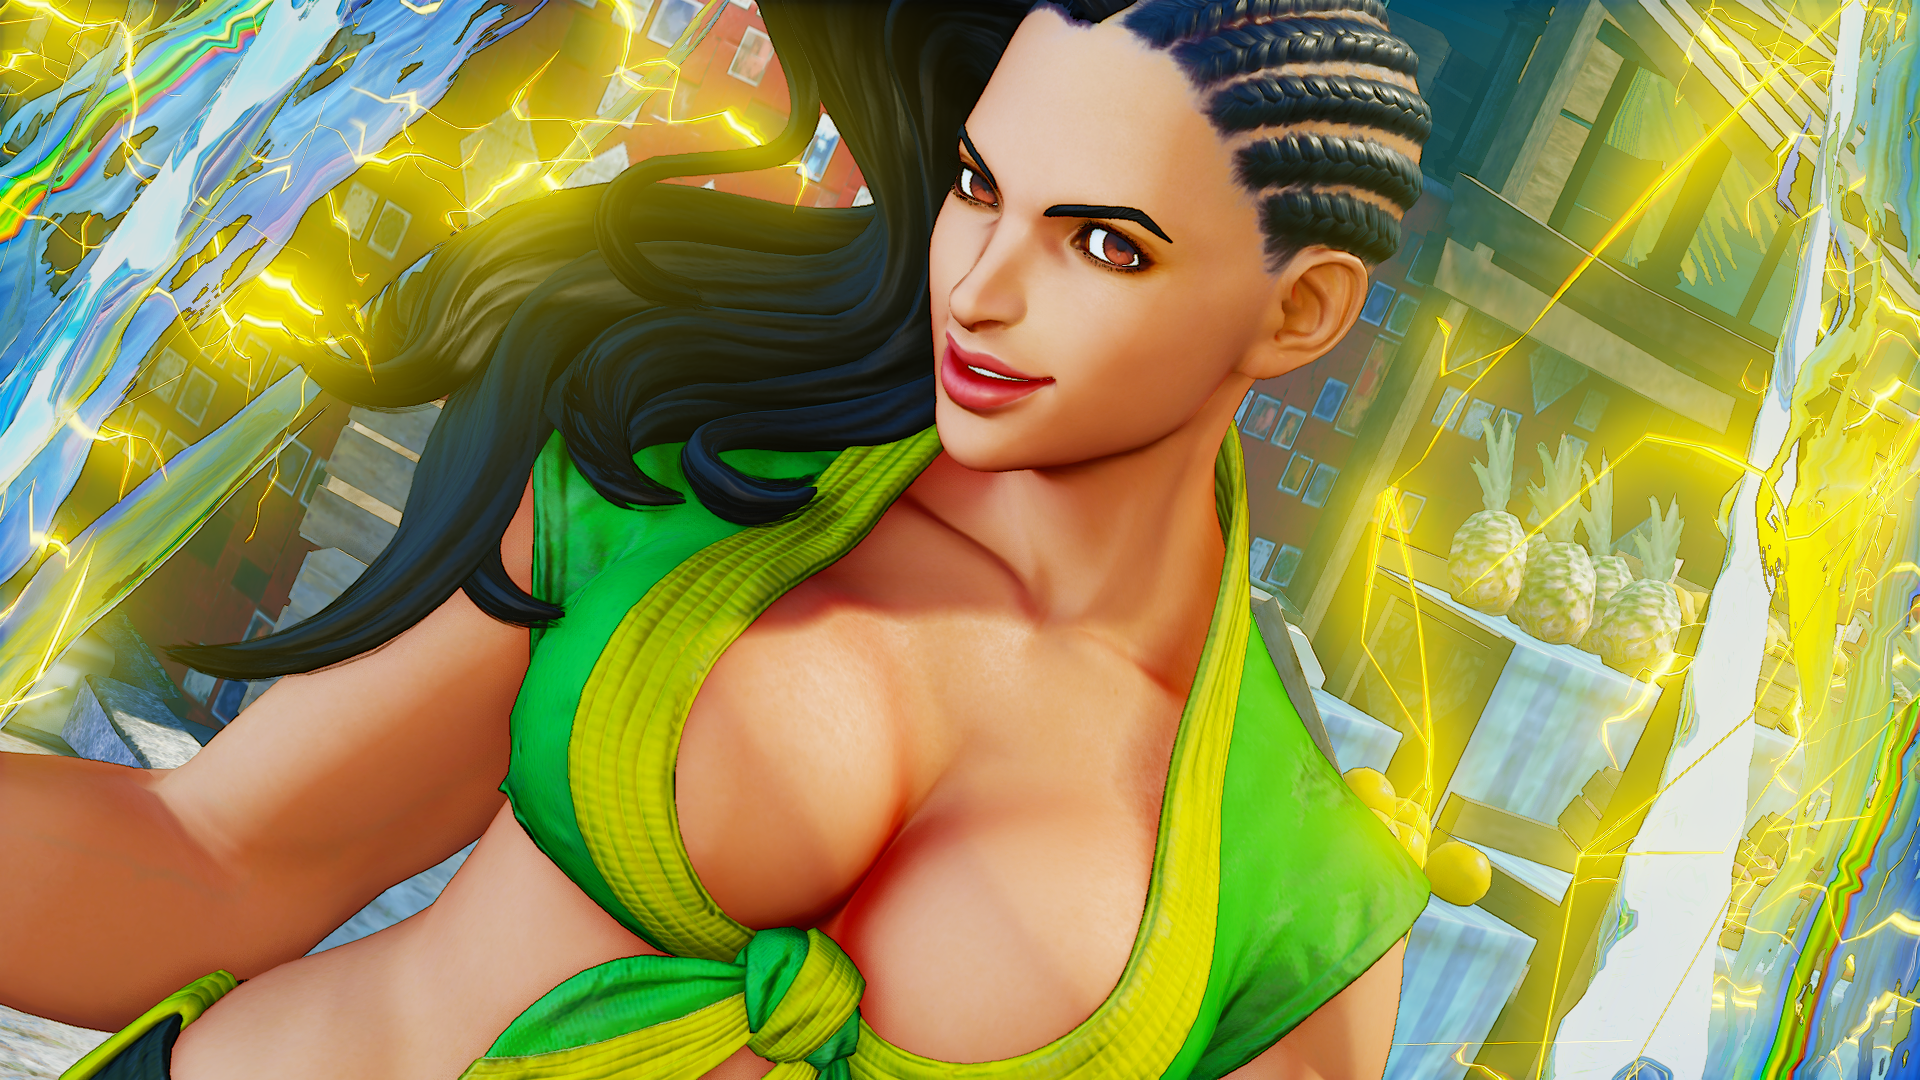 Street Fighter V: Chiêm ngưỡng loạt ảnh nóng bỏng của nữ võ sĩ Laura